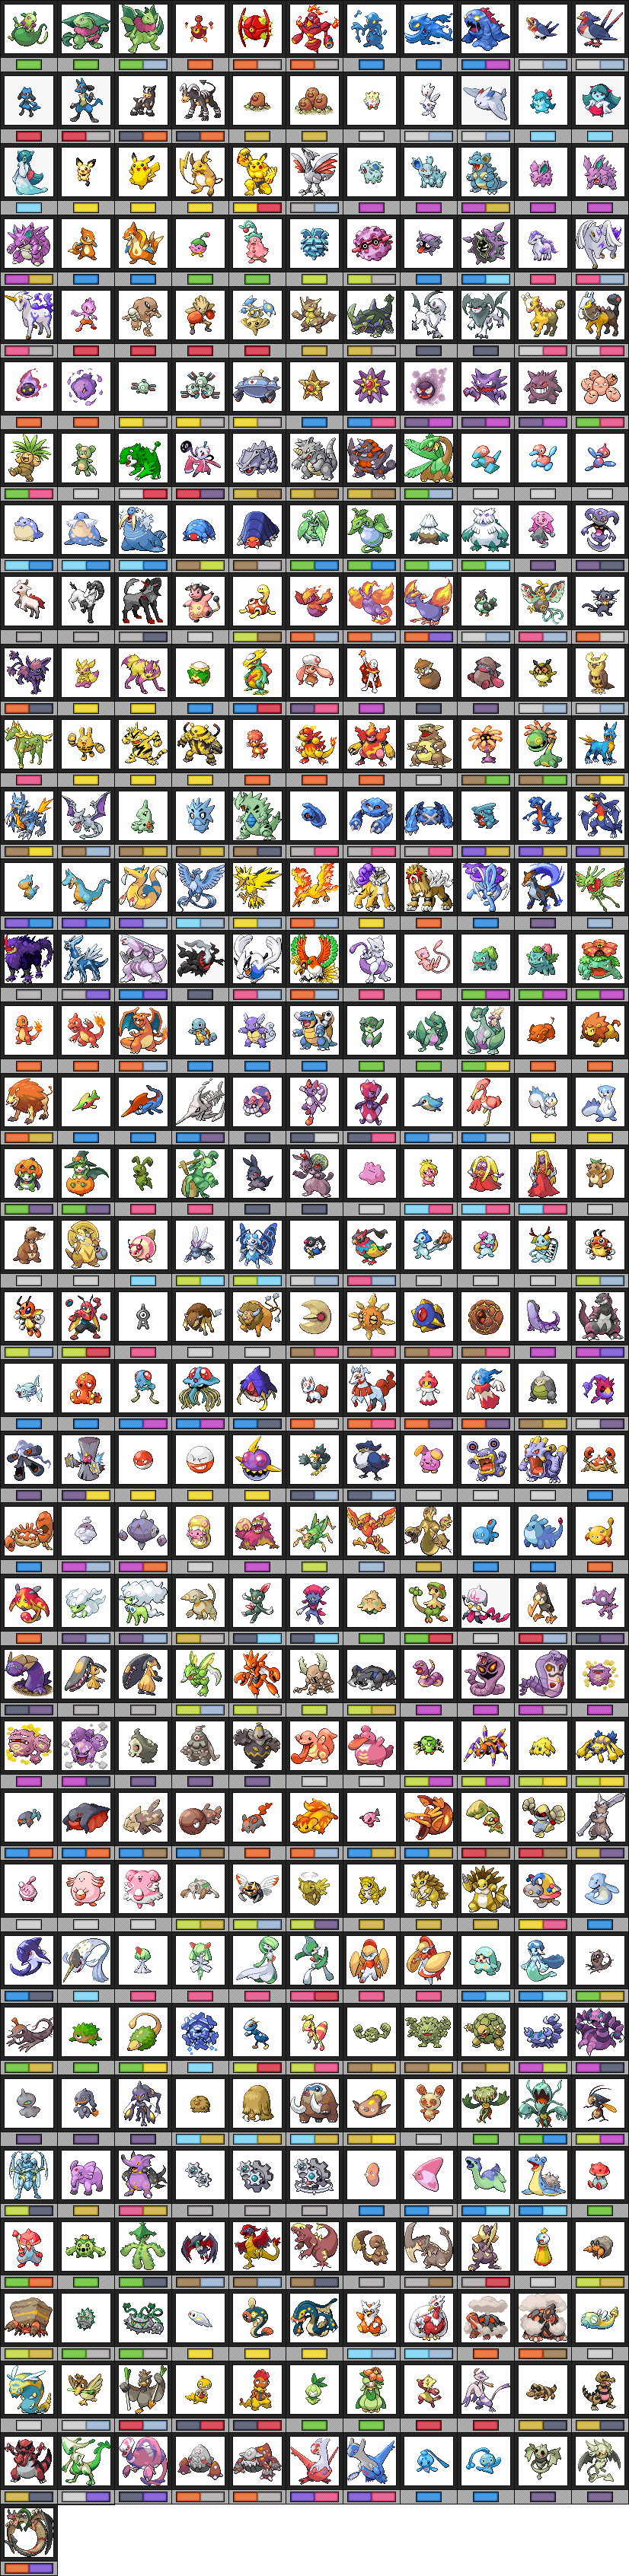 Full pokedex pokemon quartz List of